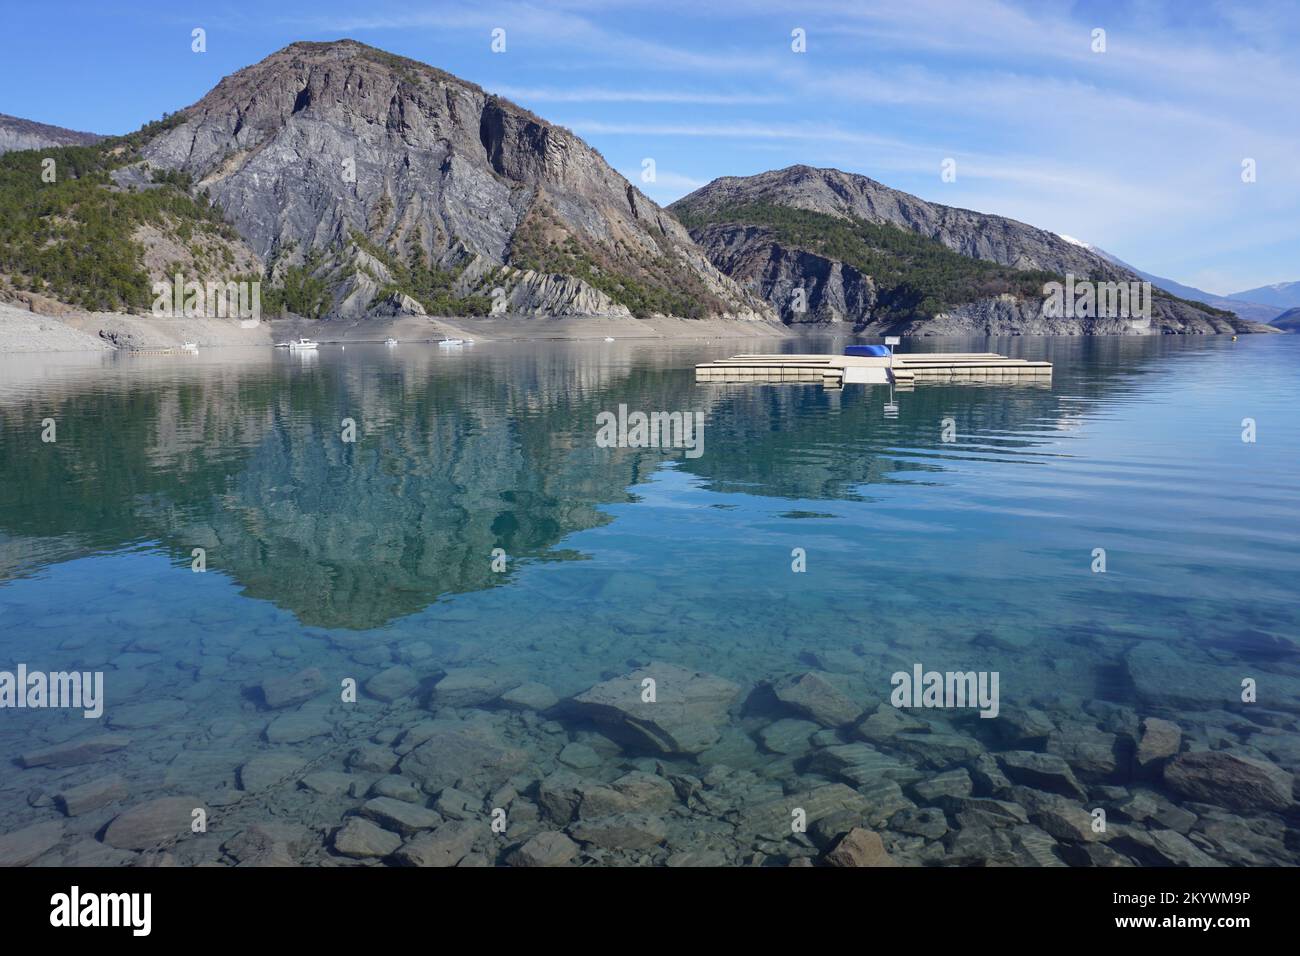 Specchio di riflessione delle montagne nel lago di Serre Poncion, Alpi meridionali, Francia in una chiara giornata di sole estivo Foto Stock